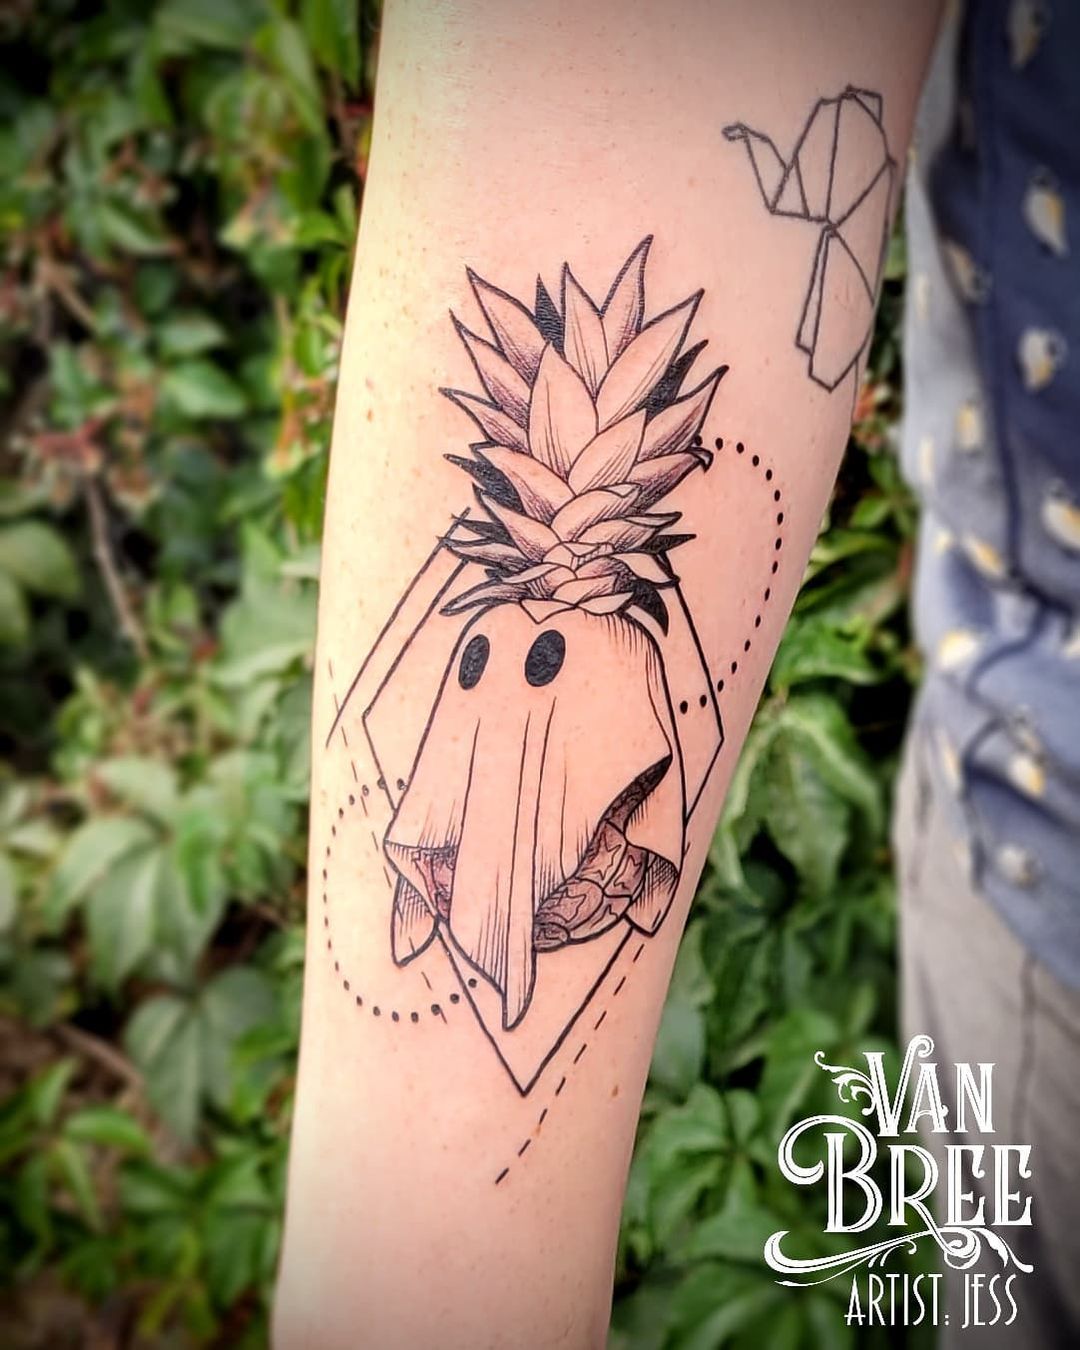 Pineapple ghost tattoo by @vanbreetattoo